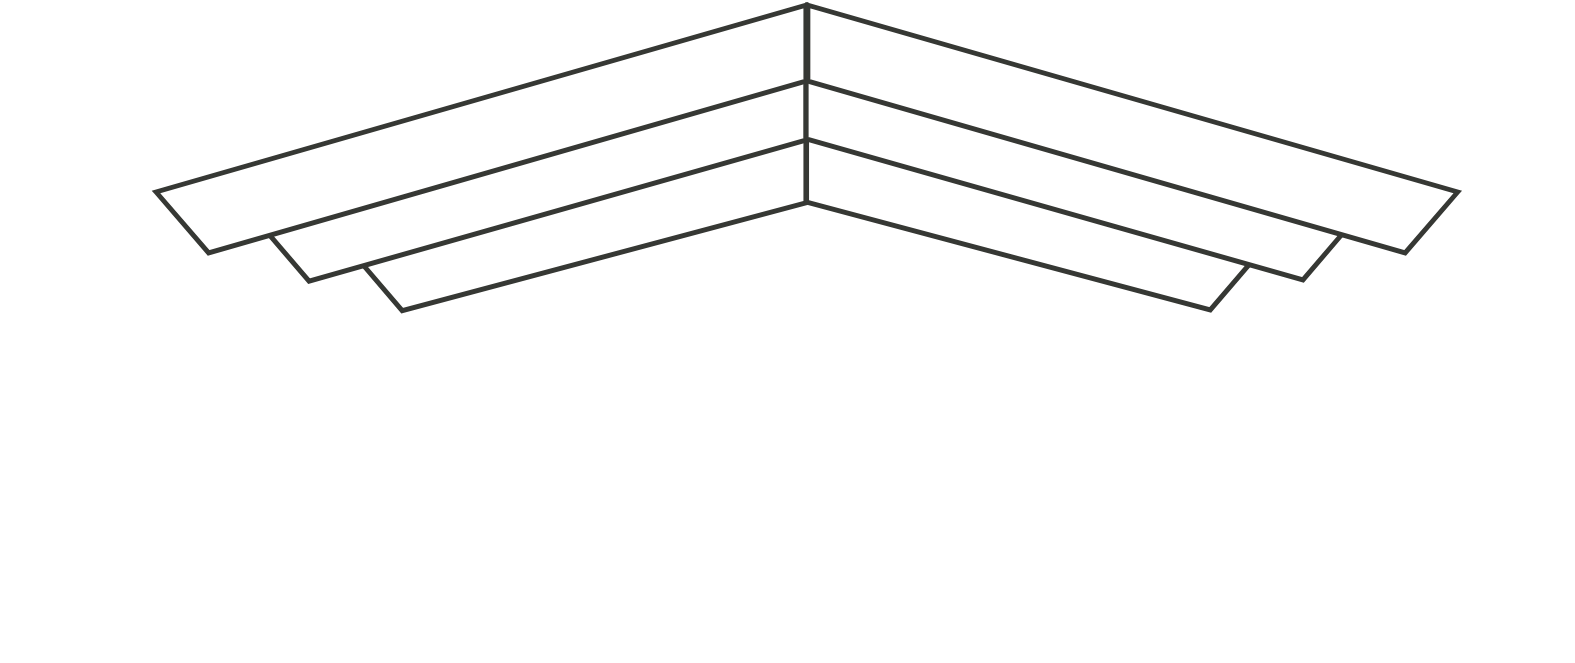 Cabana Target Drawdown logo large for dark backgrounds (transparent PNG)